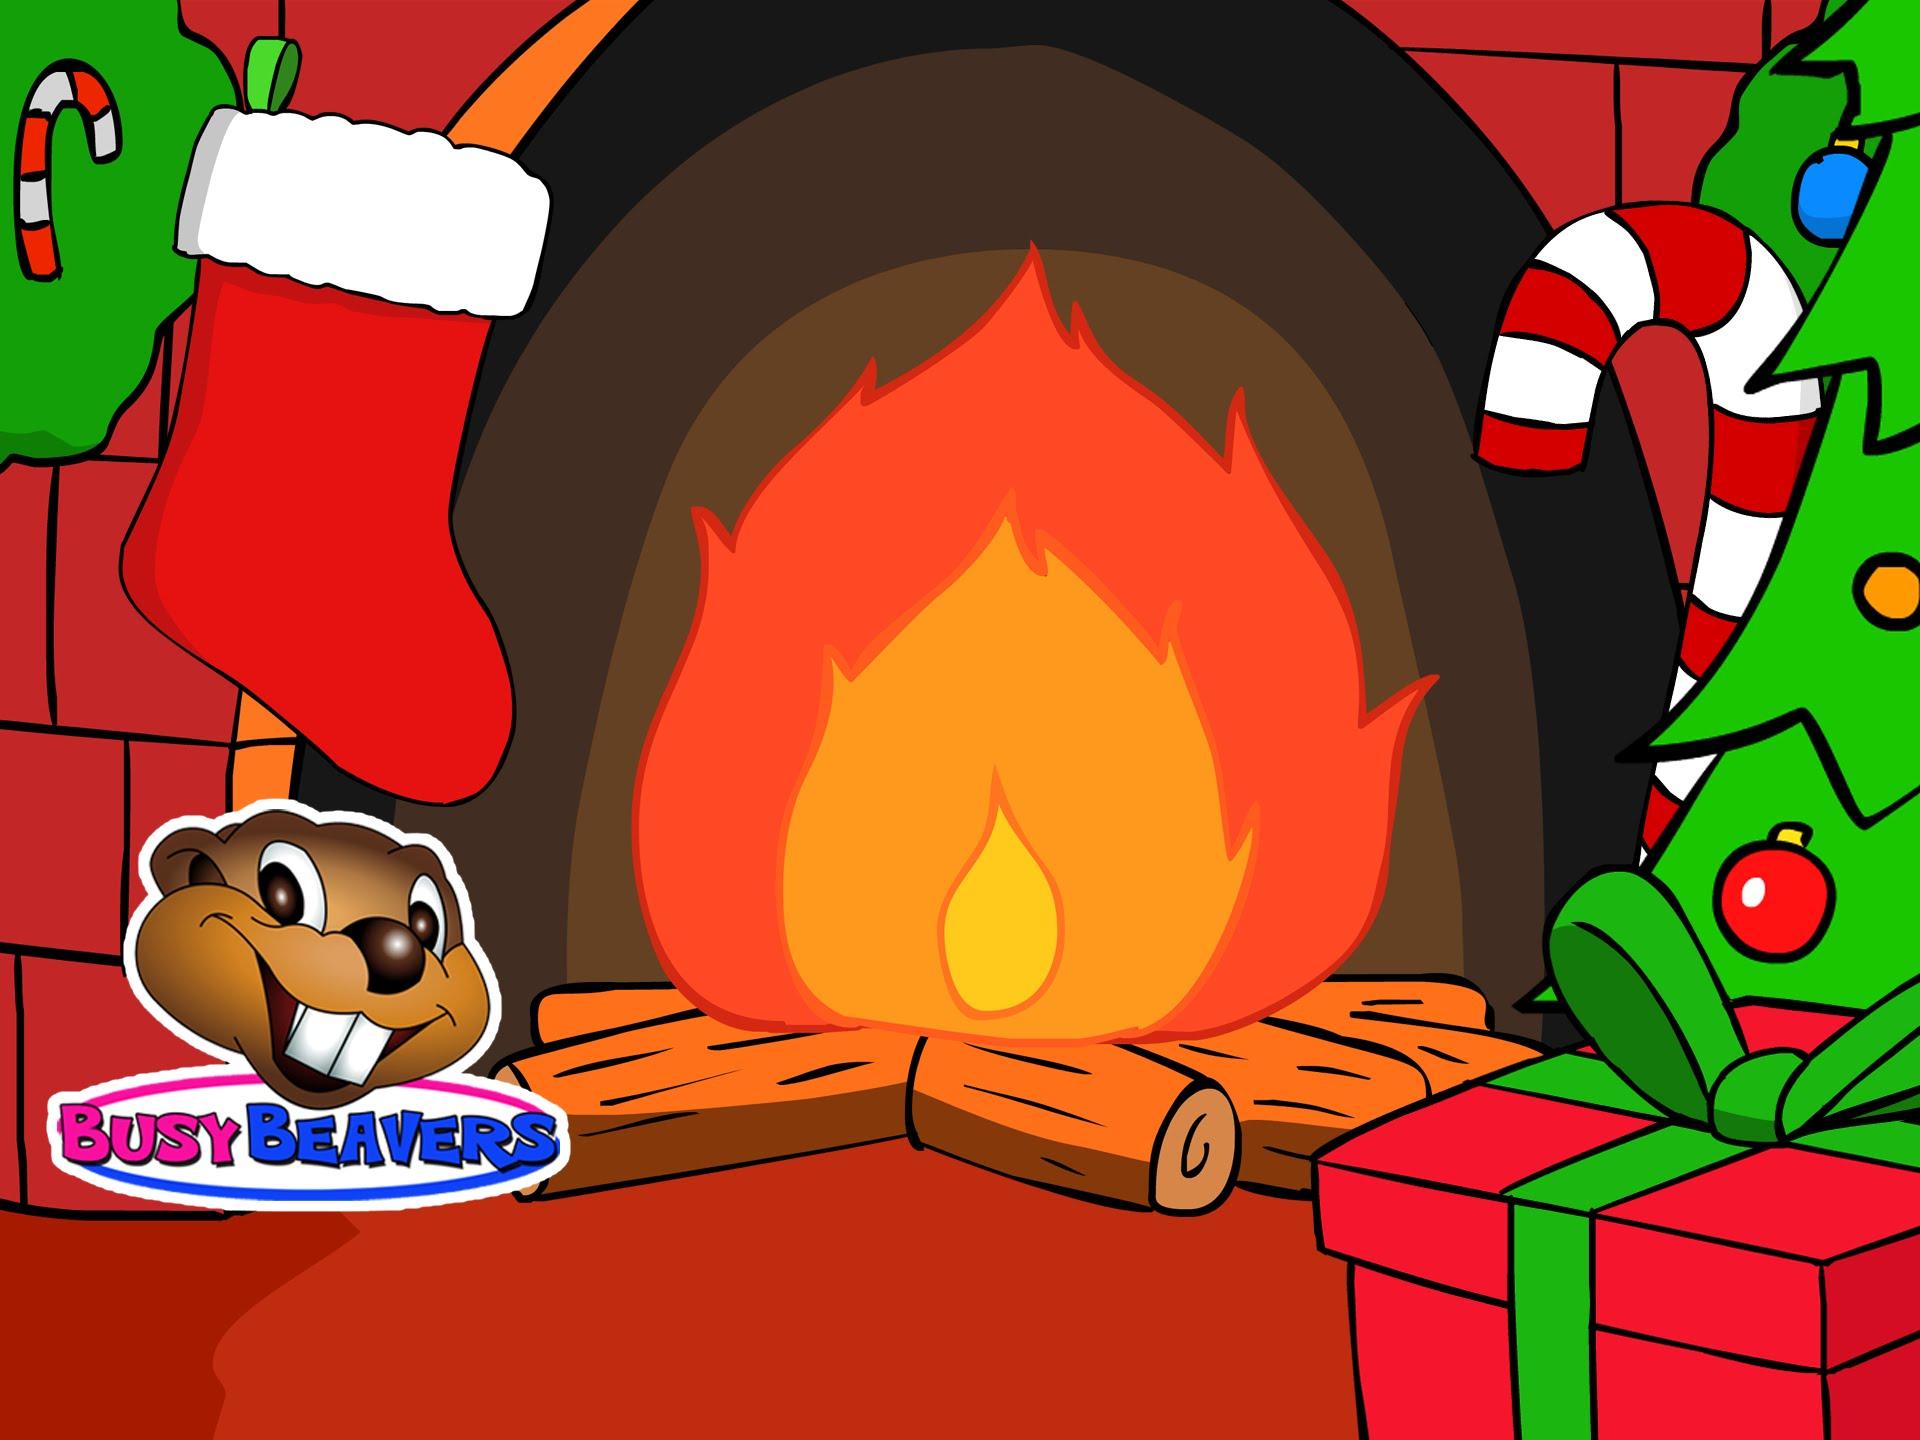 Fire Cartoon Image Christmas Yule Log Fireplace 3 Hours